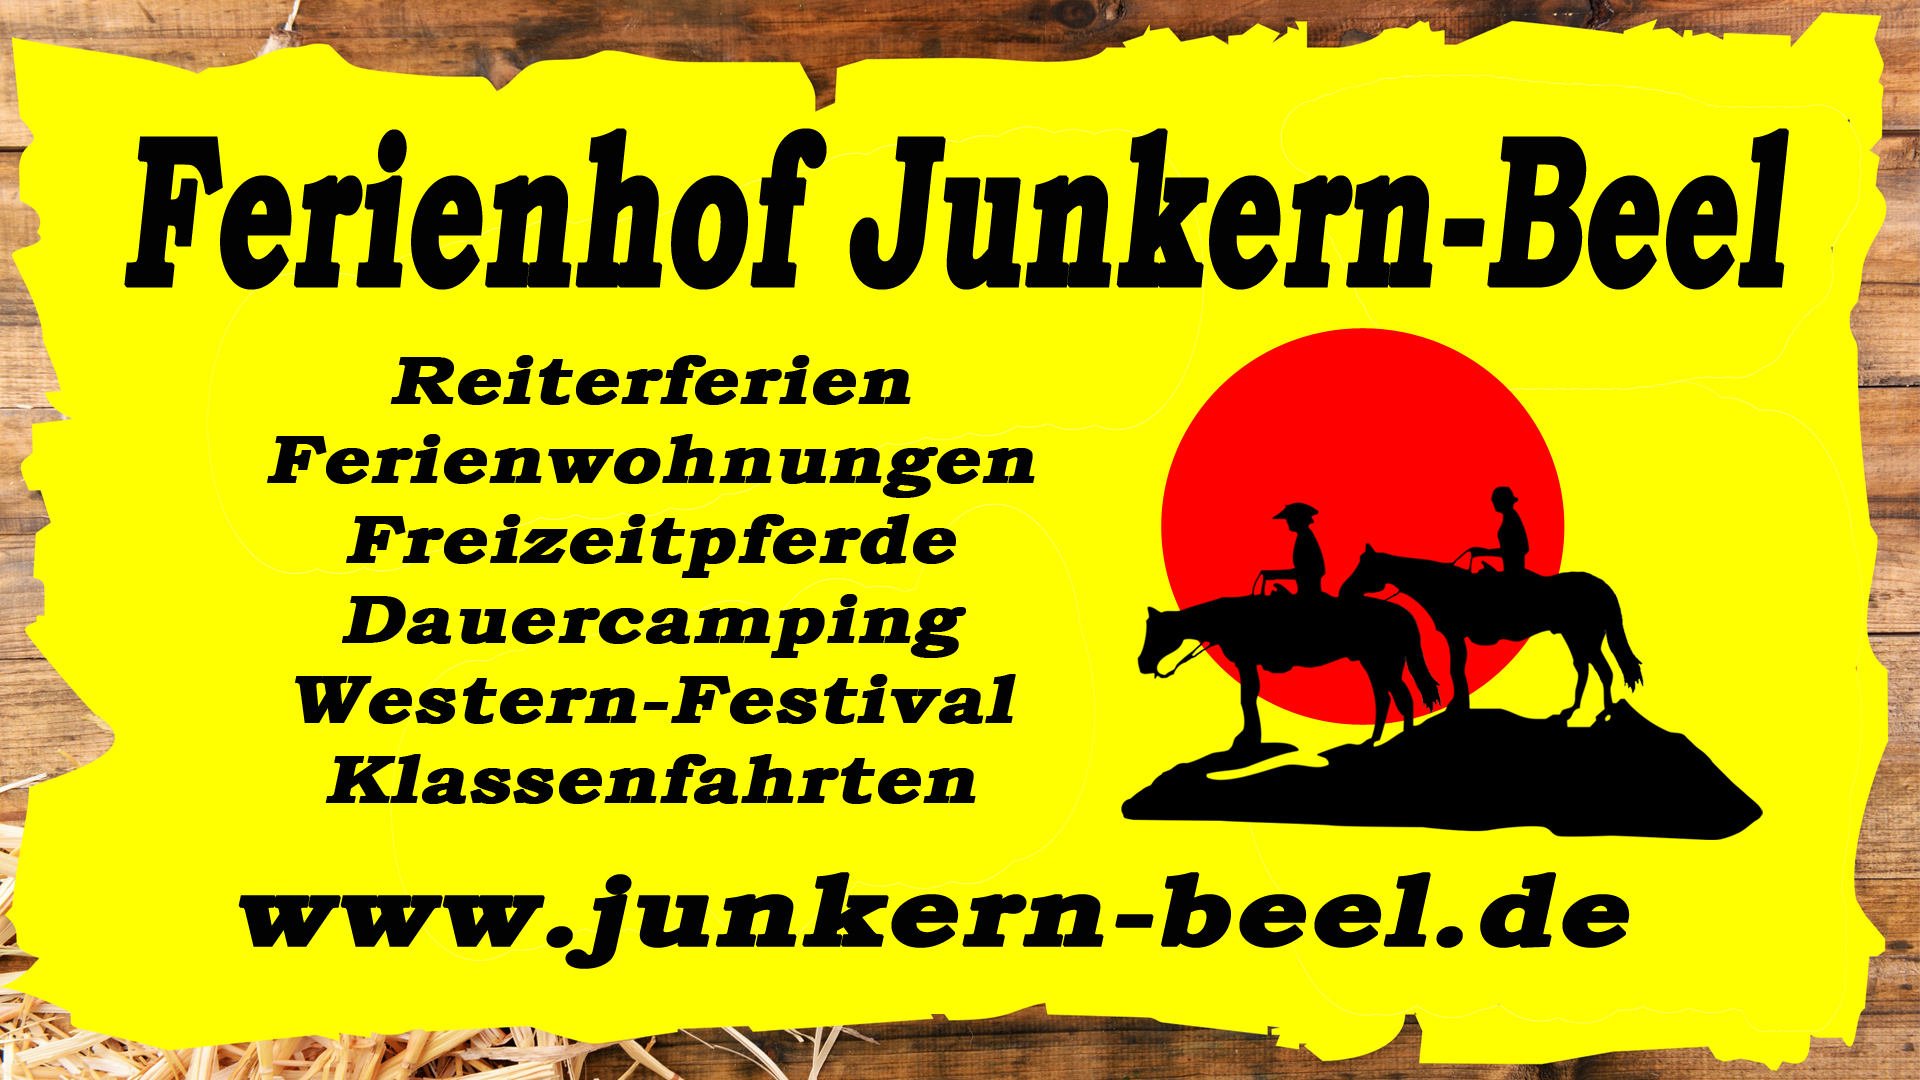 Ferienhof Junkern-Beel LED